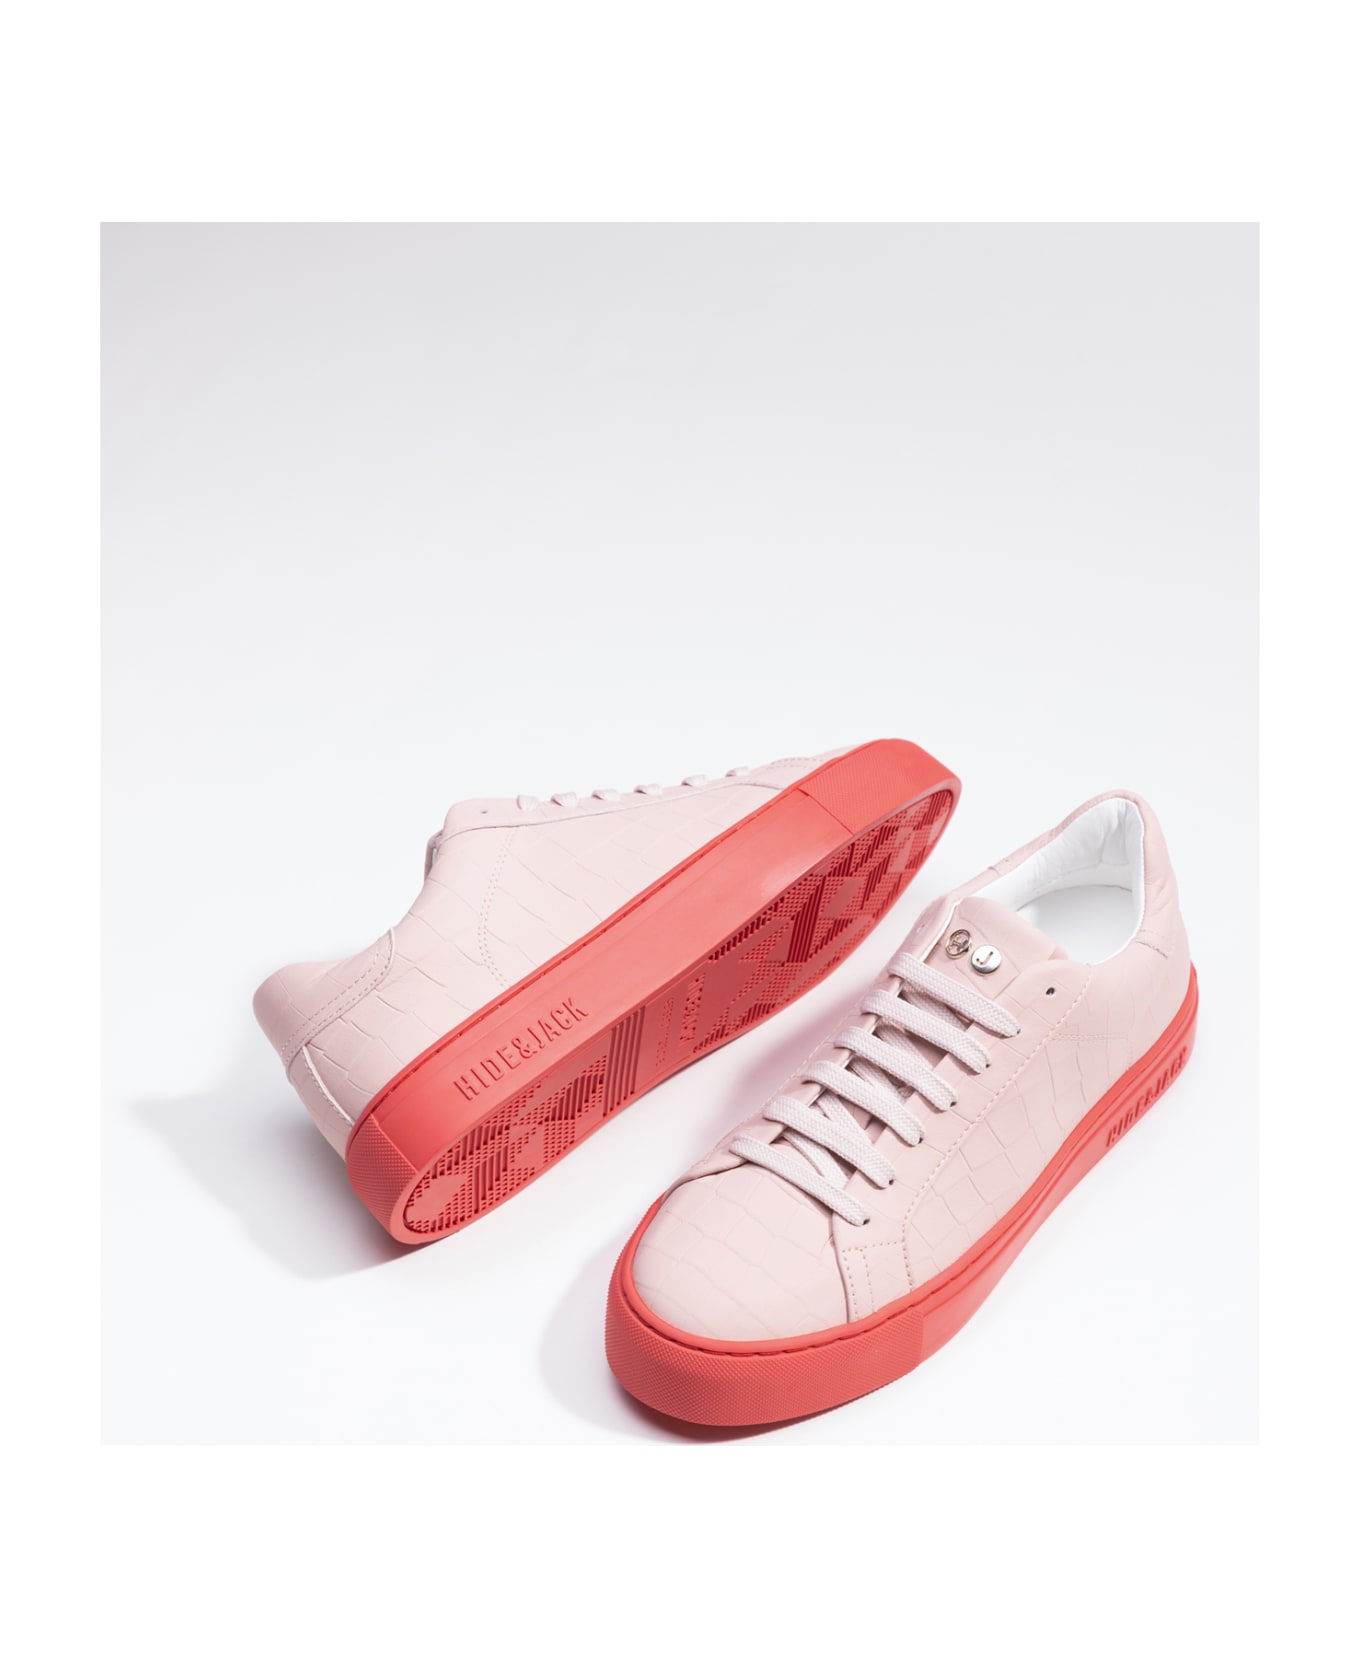 Hide&Jack Low Top Sneaker - Essence Pink Red